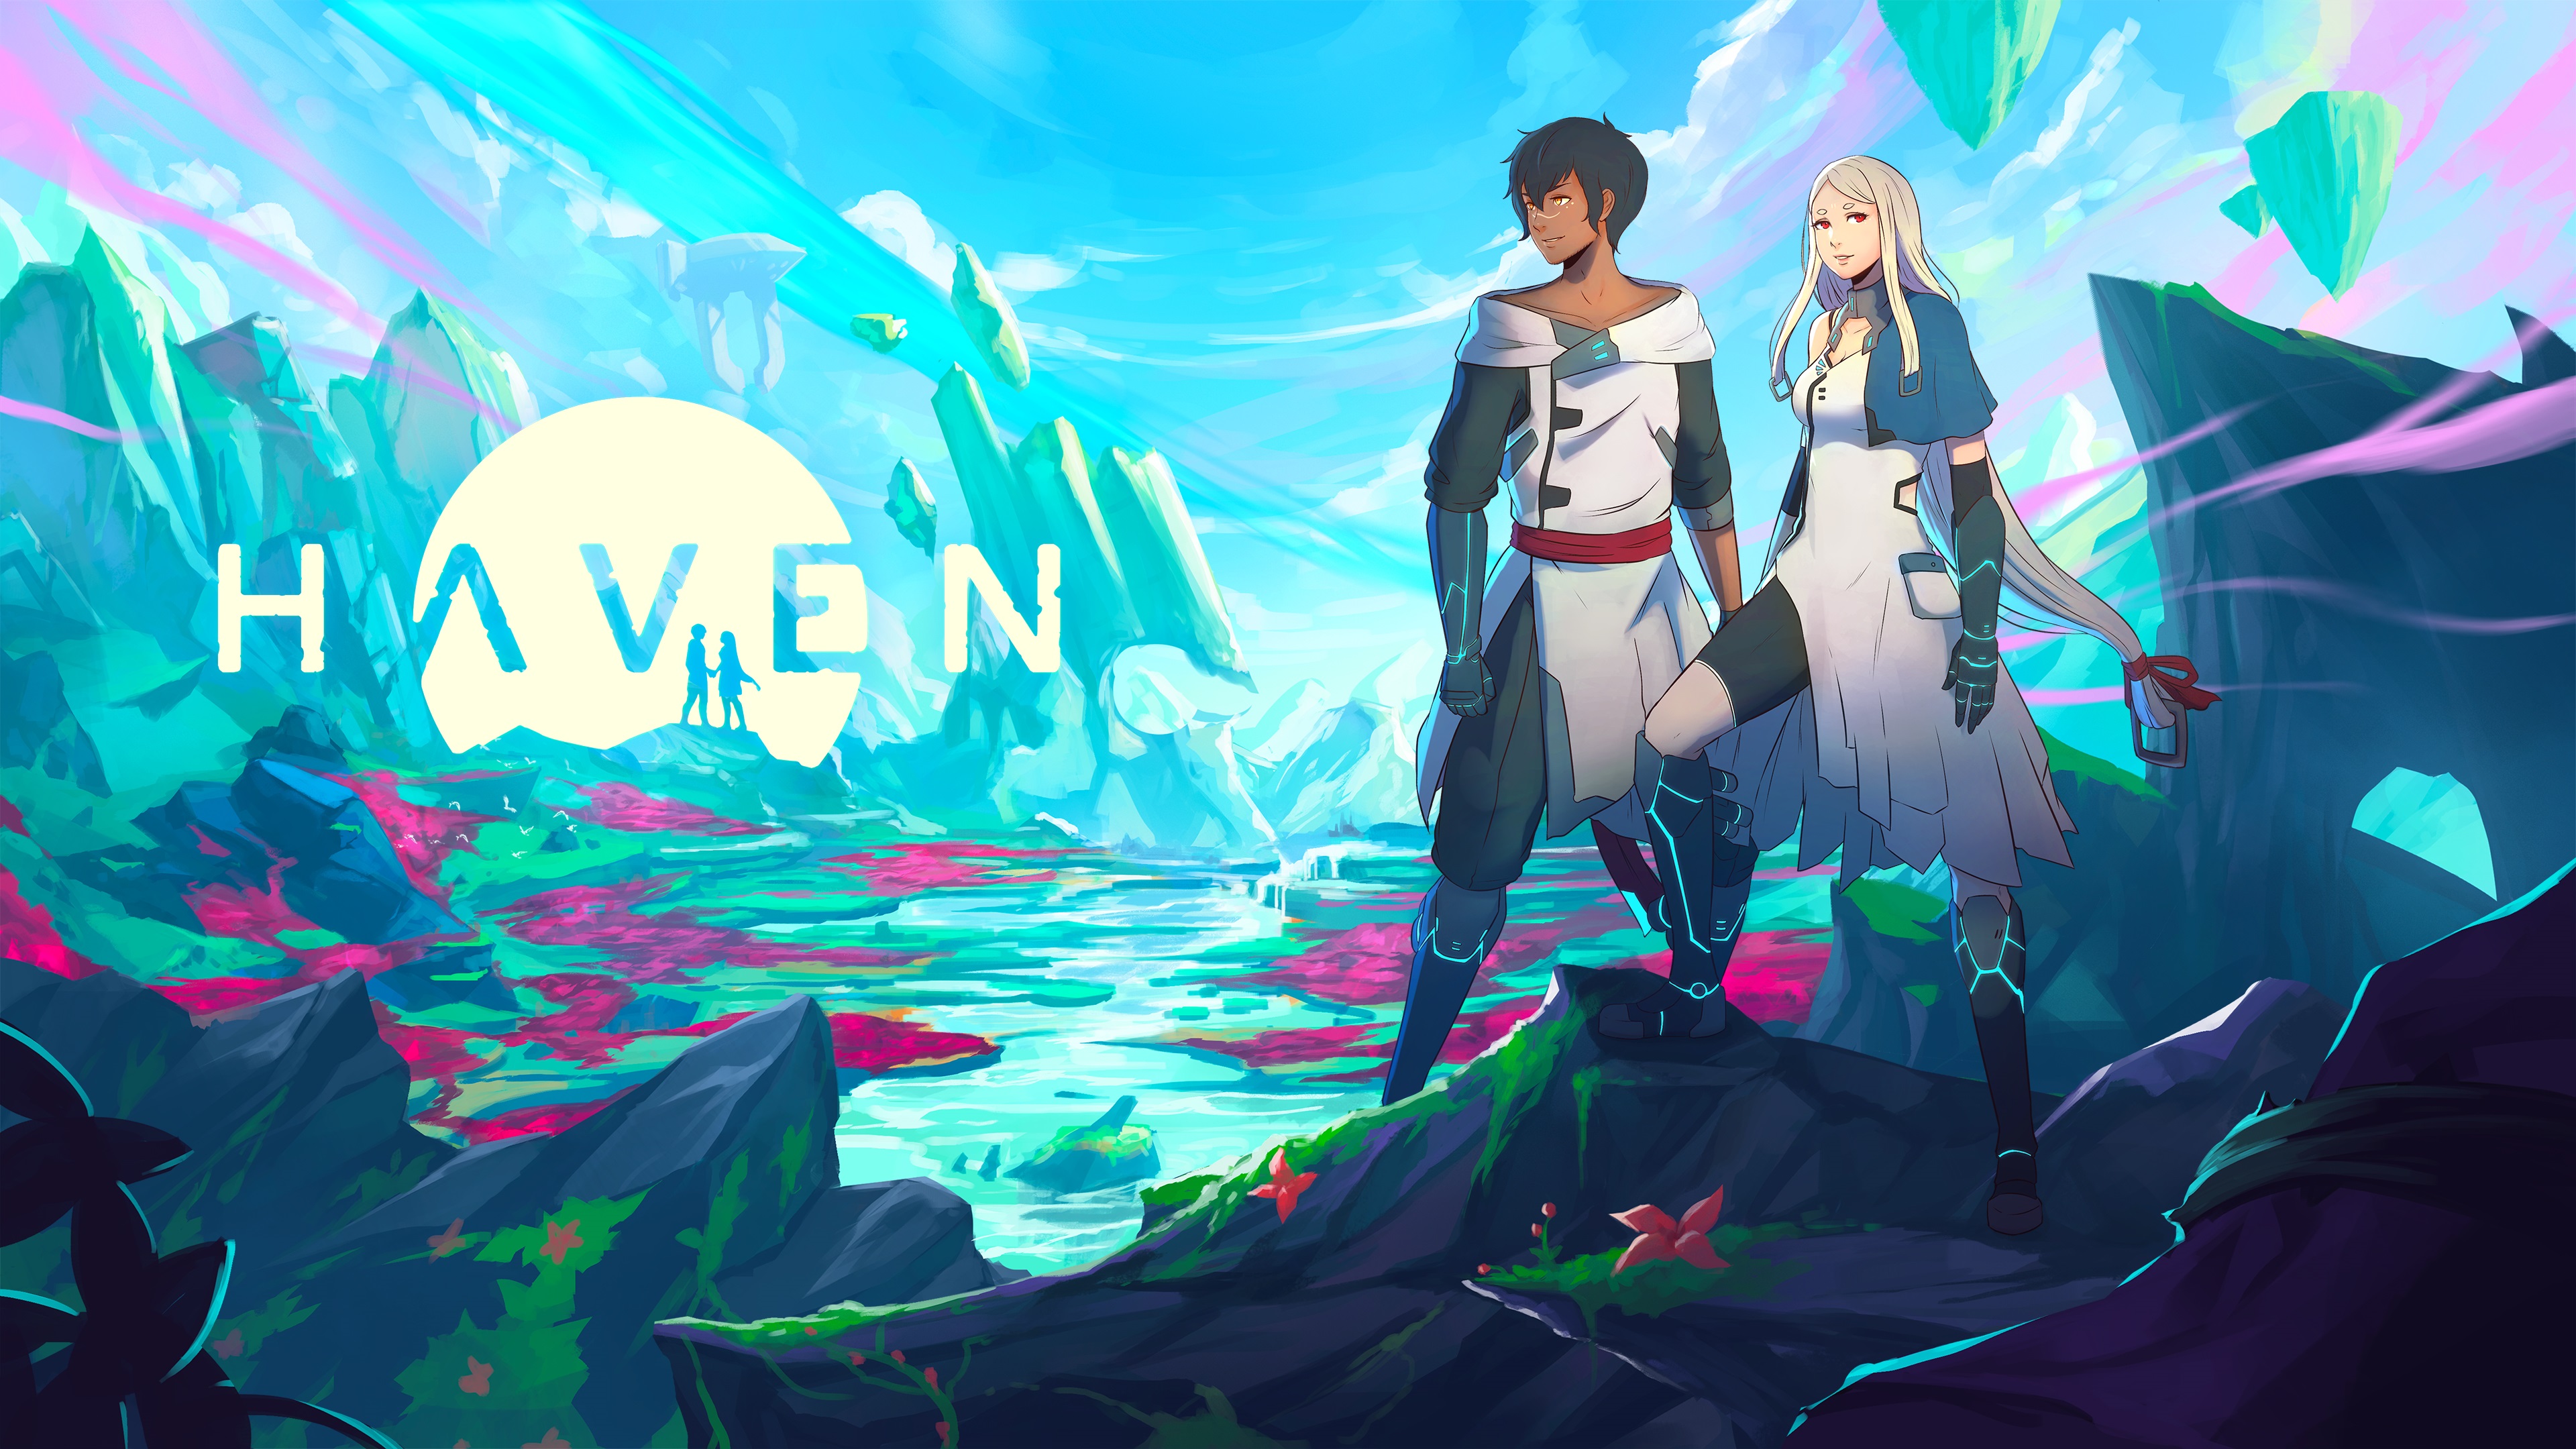 「愛」がテーマのアクションRPG『Haven』、Nintendo SwitchとPlayStation 4でも遊べるように。2月4日からダウンロード版をリリース開始_003